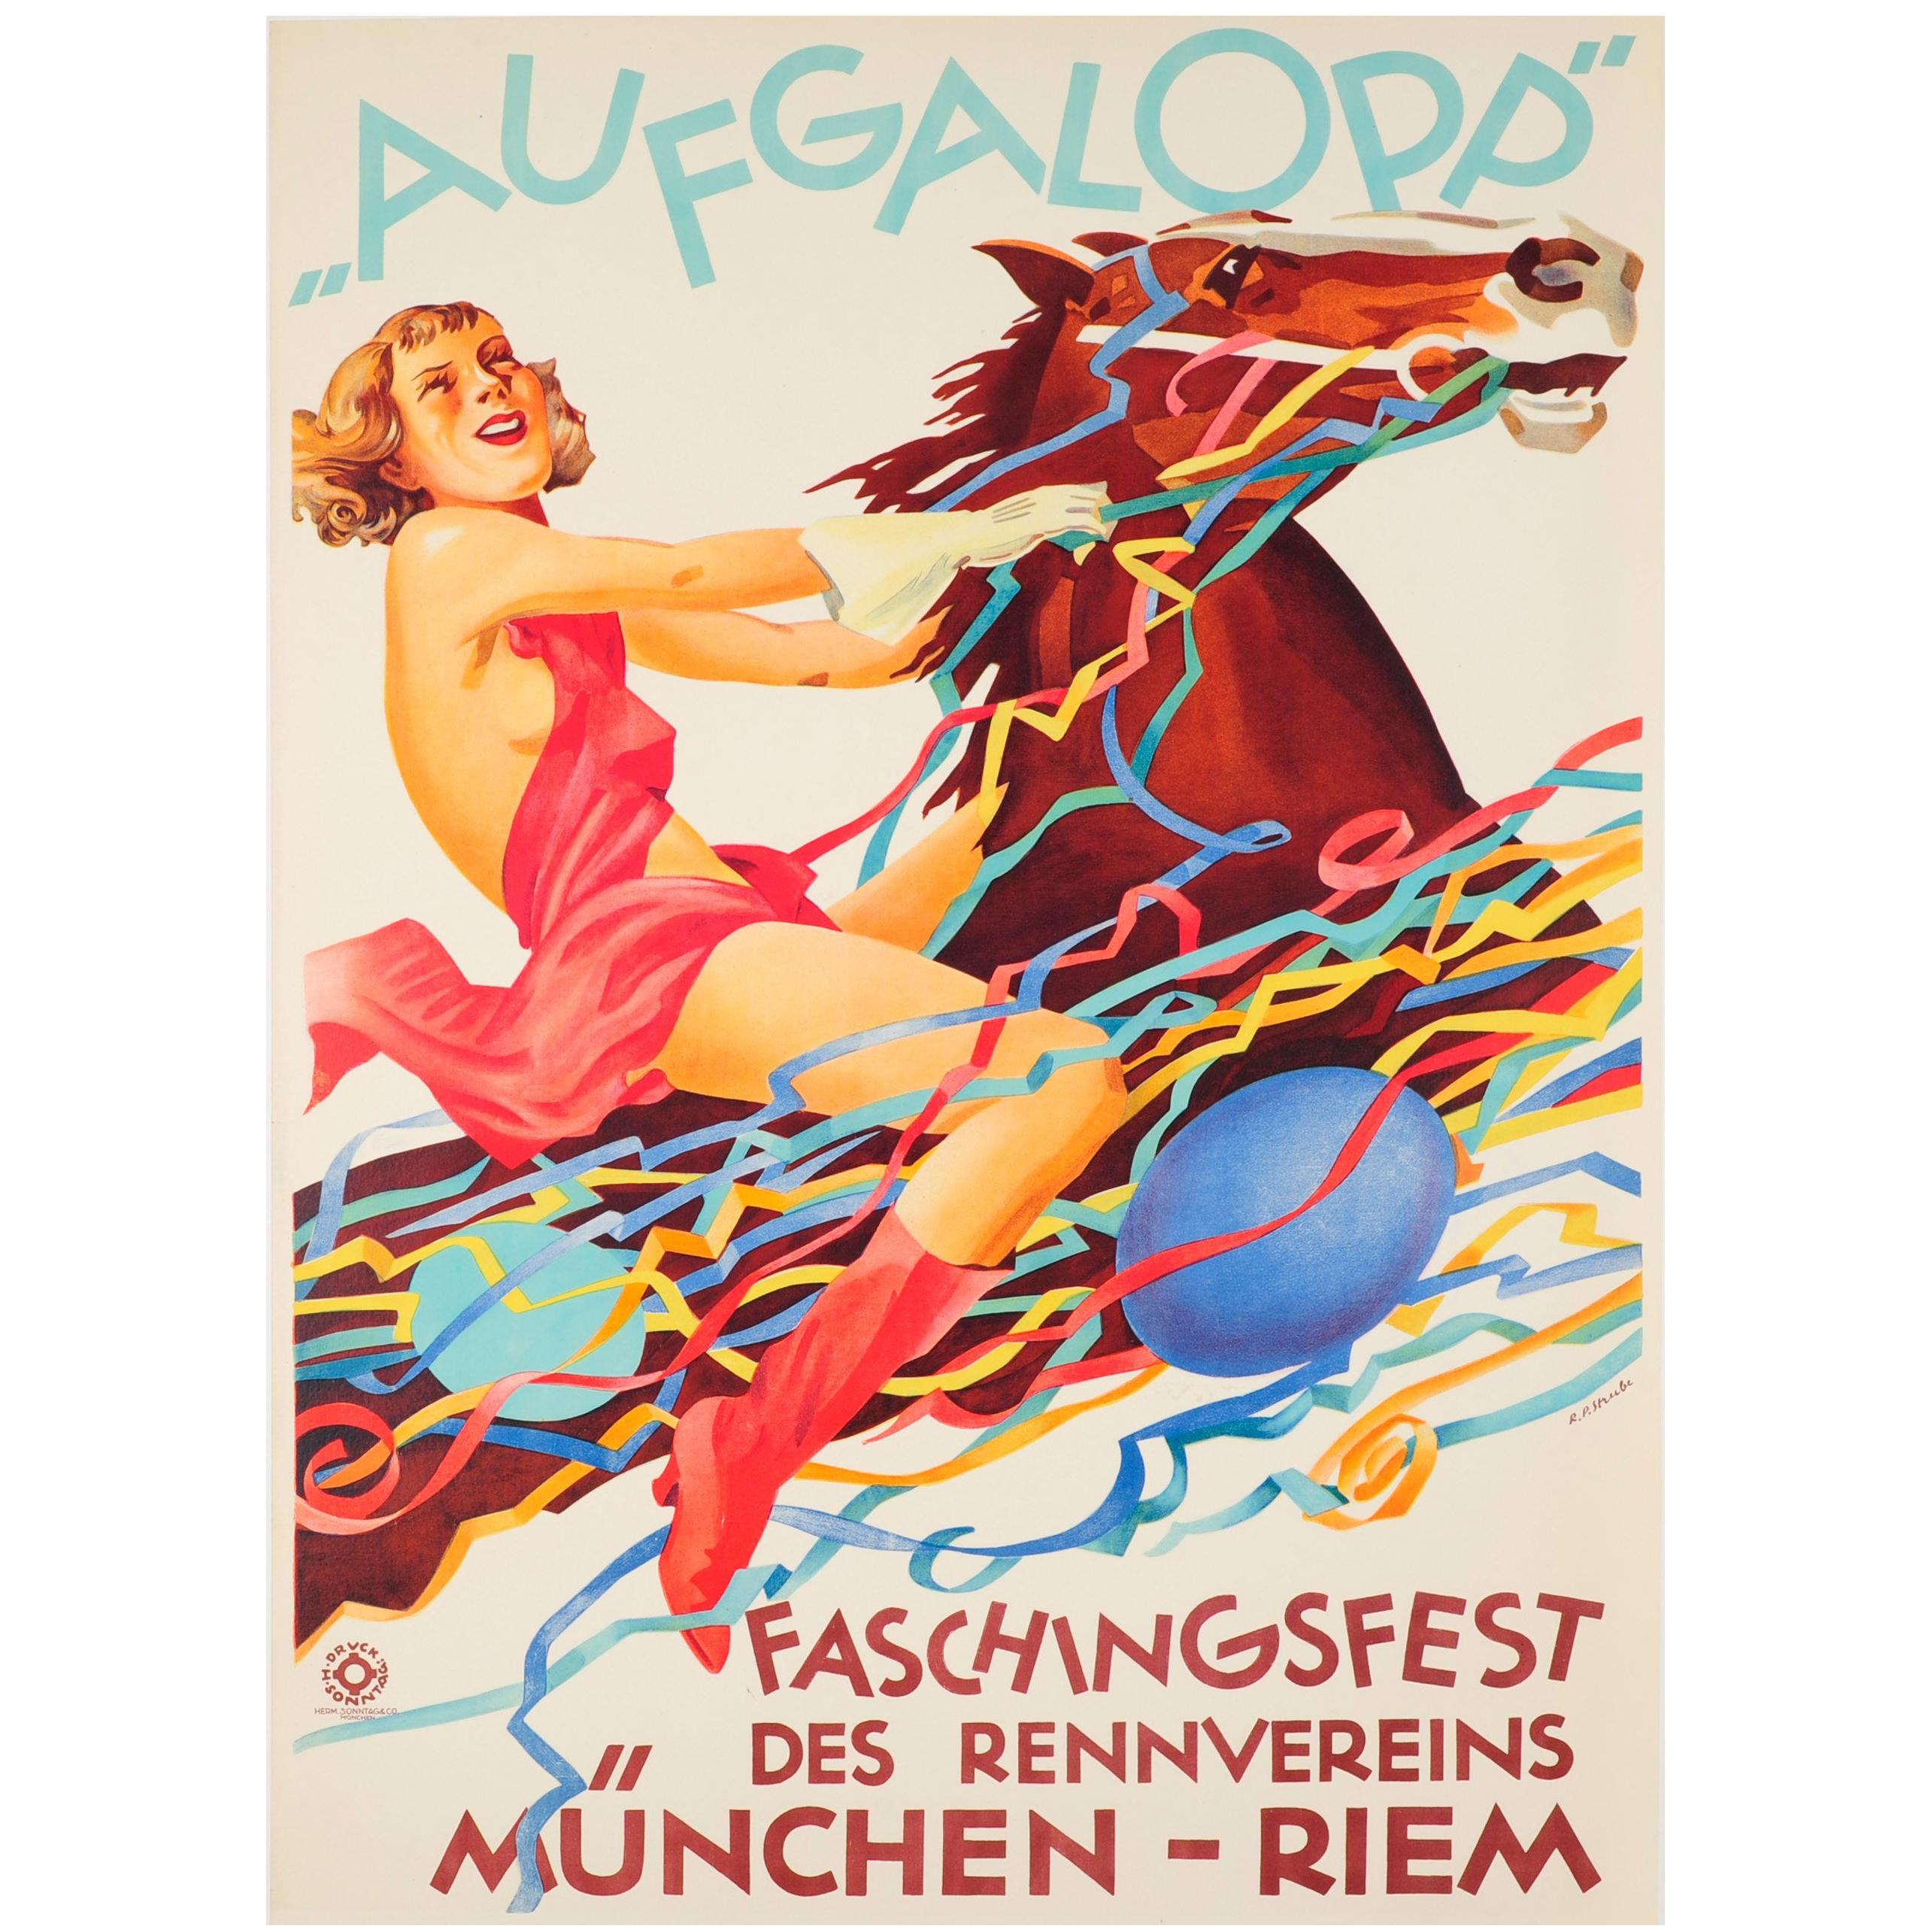 Affiche vintage d'origine pour le carnaval Aufgalopp Faschingsfest de Munich avec cheval